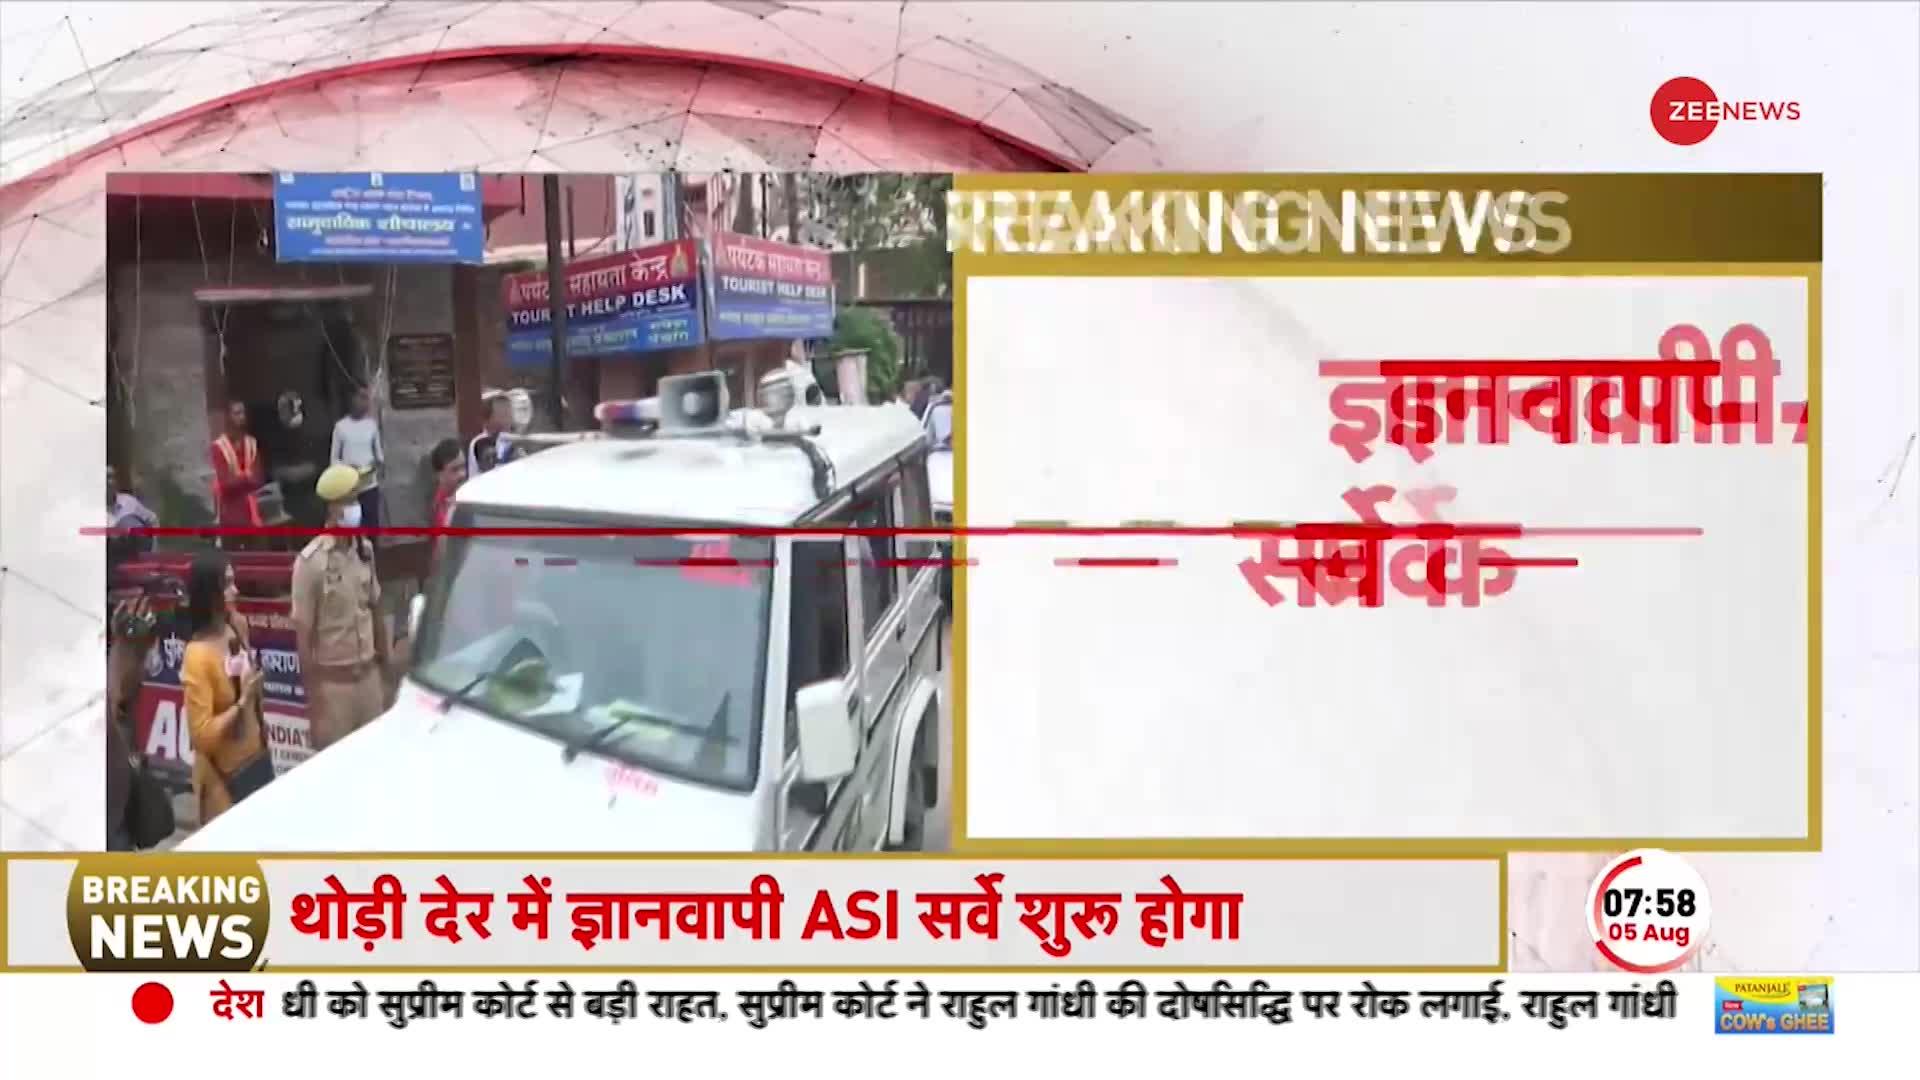 Breaking News: ज्ञानवापी पहुंची ASI सर्वे की टीम, आज हिंदू पक्ष के साथ मुस्लिम पक्ष भी रहेगा मौजूद